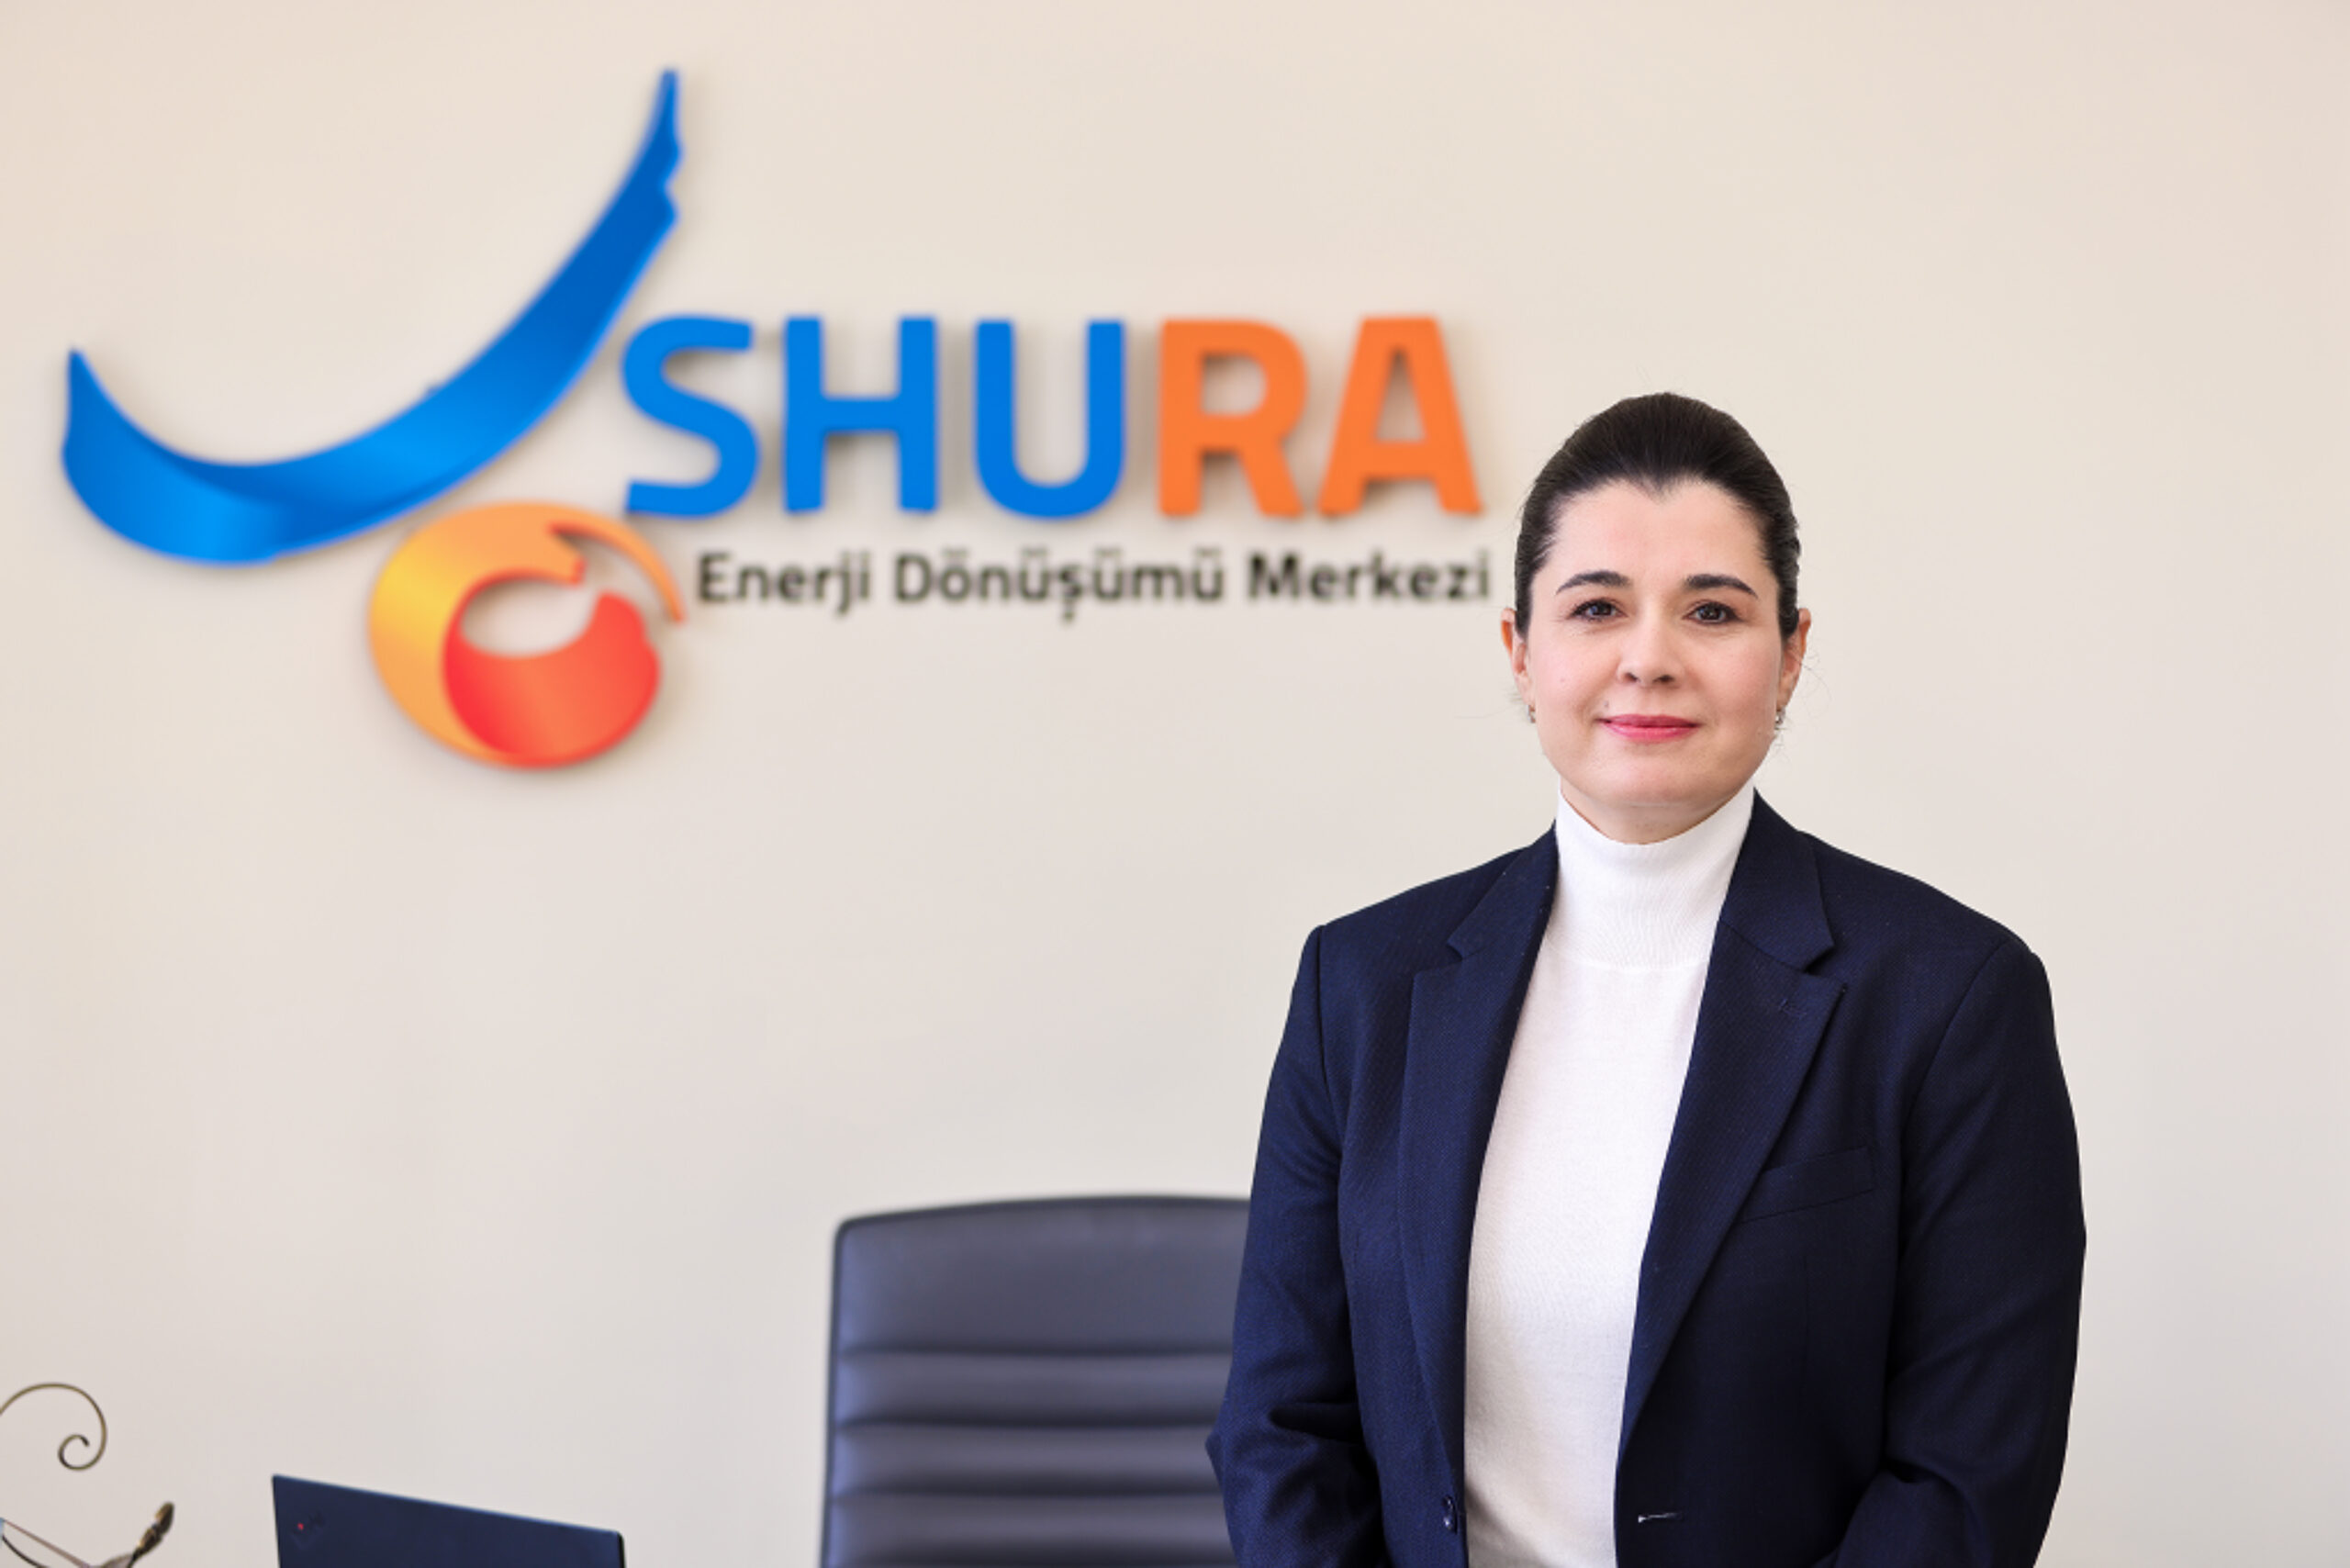 SHURA Enerji Dönüşümü Merkezi:   KALKINMA VE KARBONSUZLAŞMA İÇİN BÜTÜNLÜKLÜ SANAYİ POLİTİKASI GEREKİYOR 